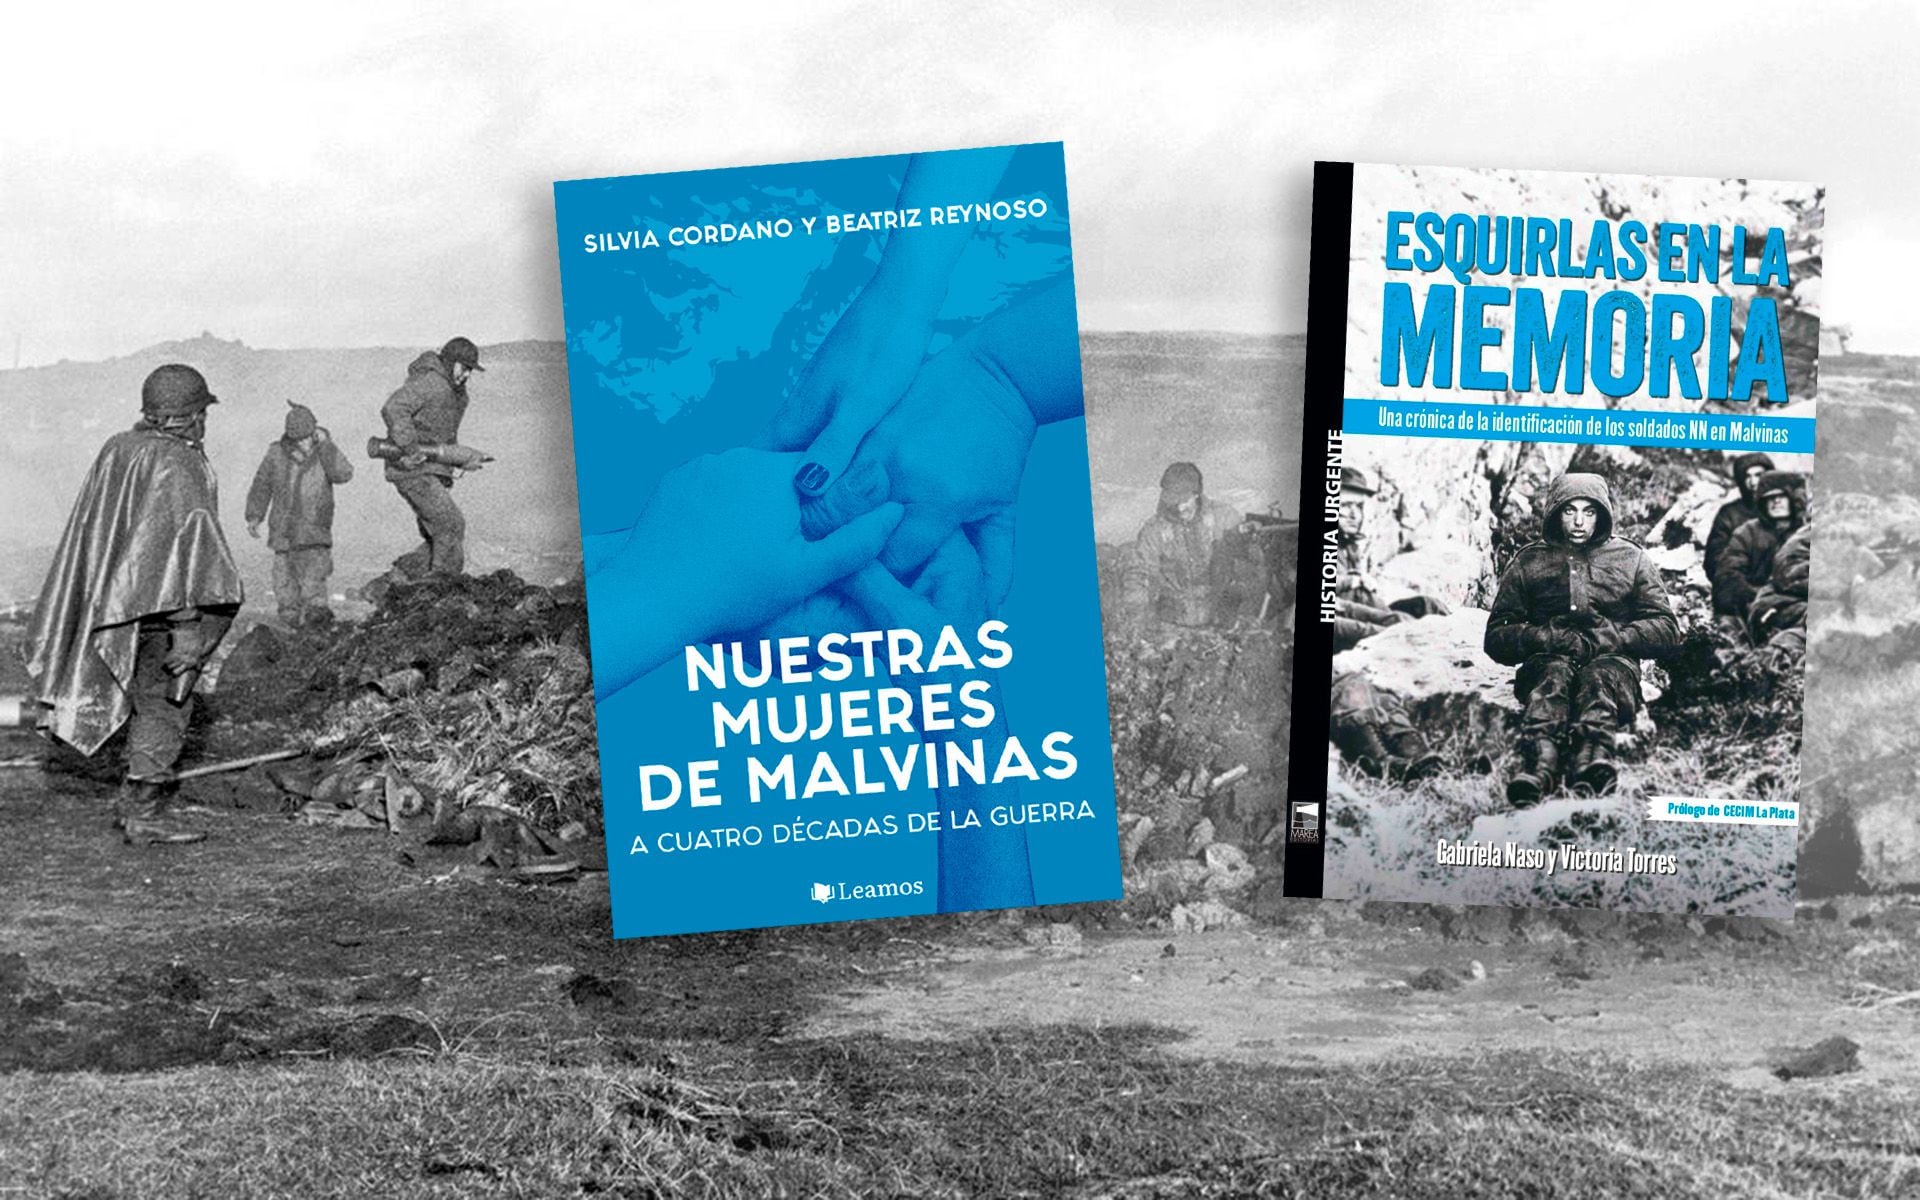 Los libros "Nuestras mujeres de Malvinas" y "Esquirlas en la memoria"